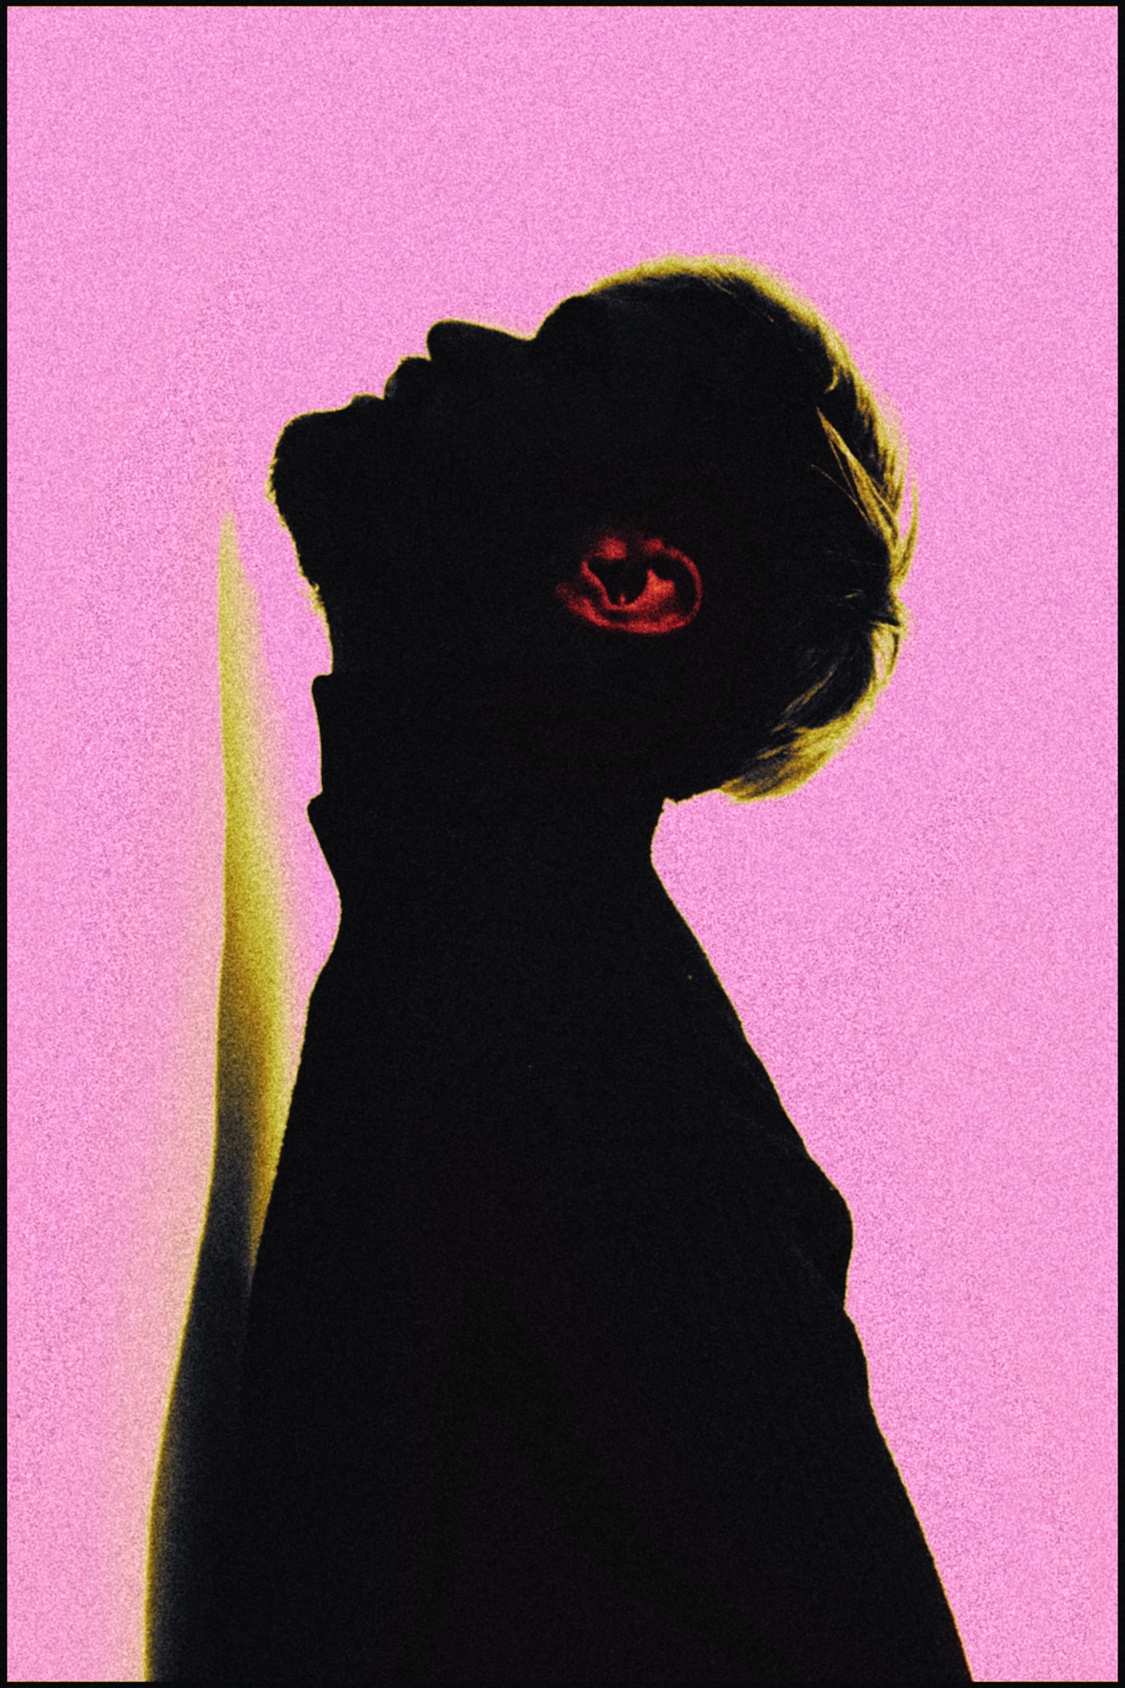 "Я бачу людей через квітку сонця" - Данієль Скрипник | Обличчя Індустрії